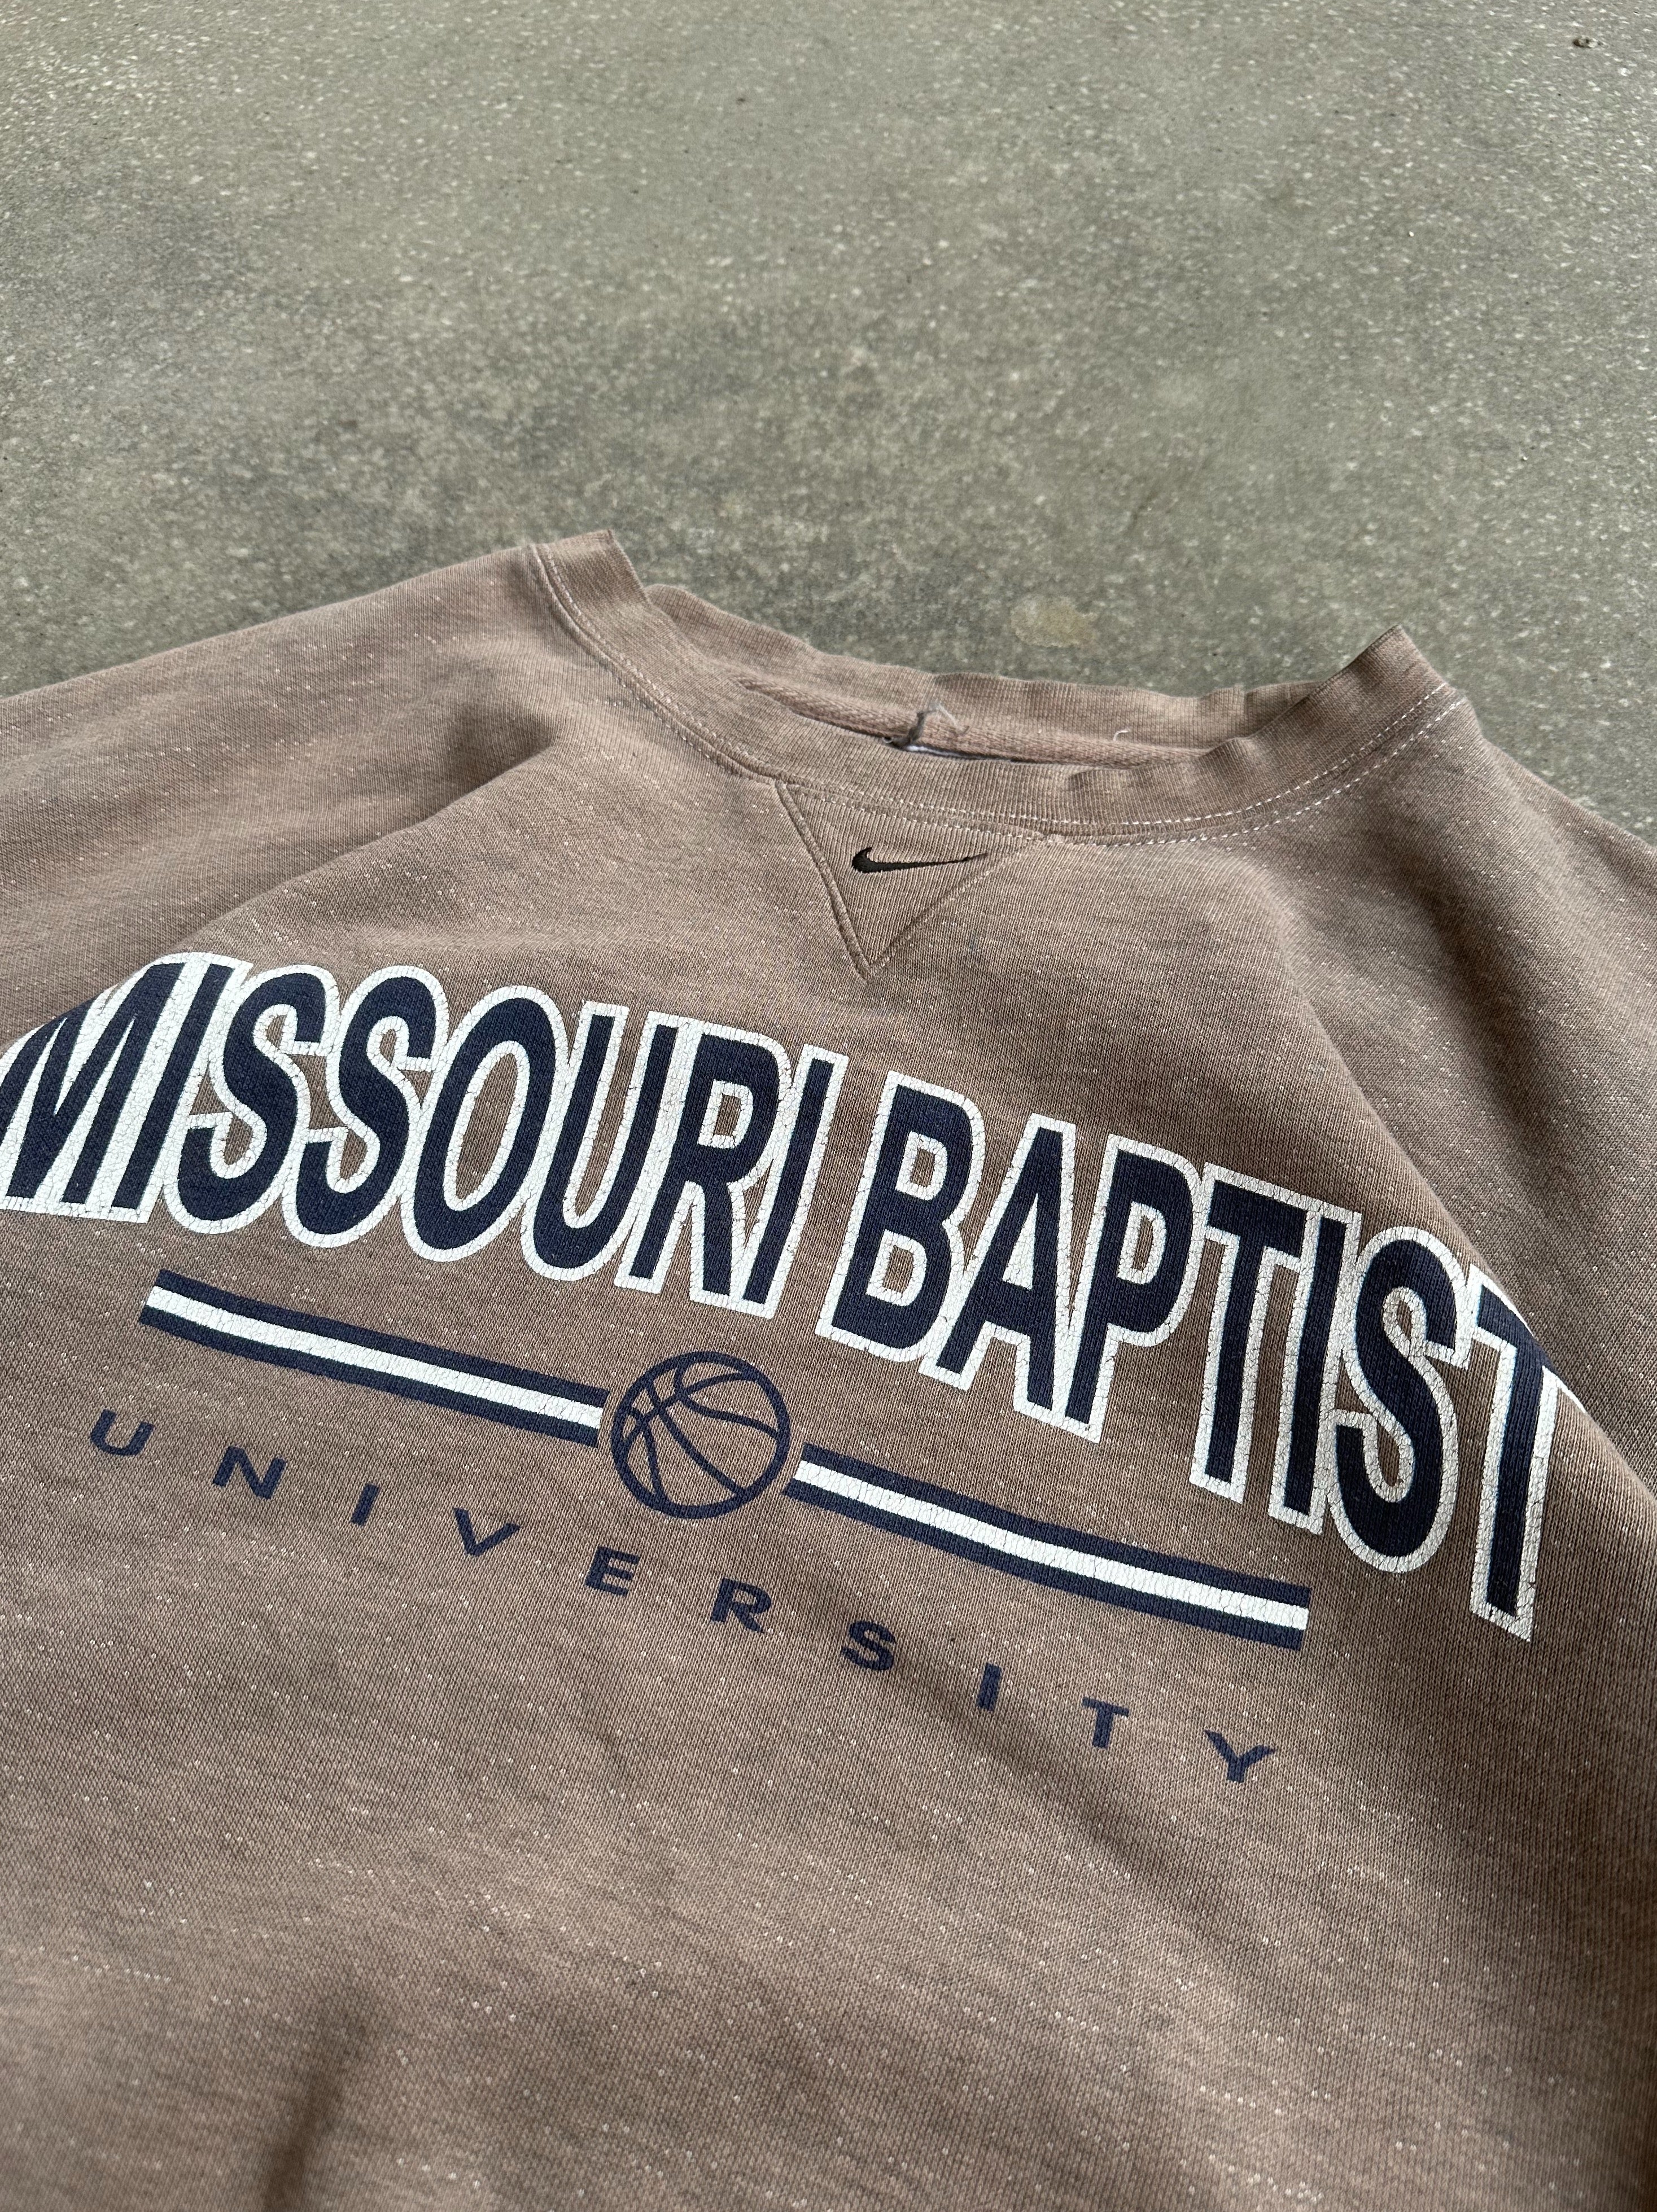 Vintage Nike 'Missouri Baptiste University' Crewneck - Extra Large